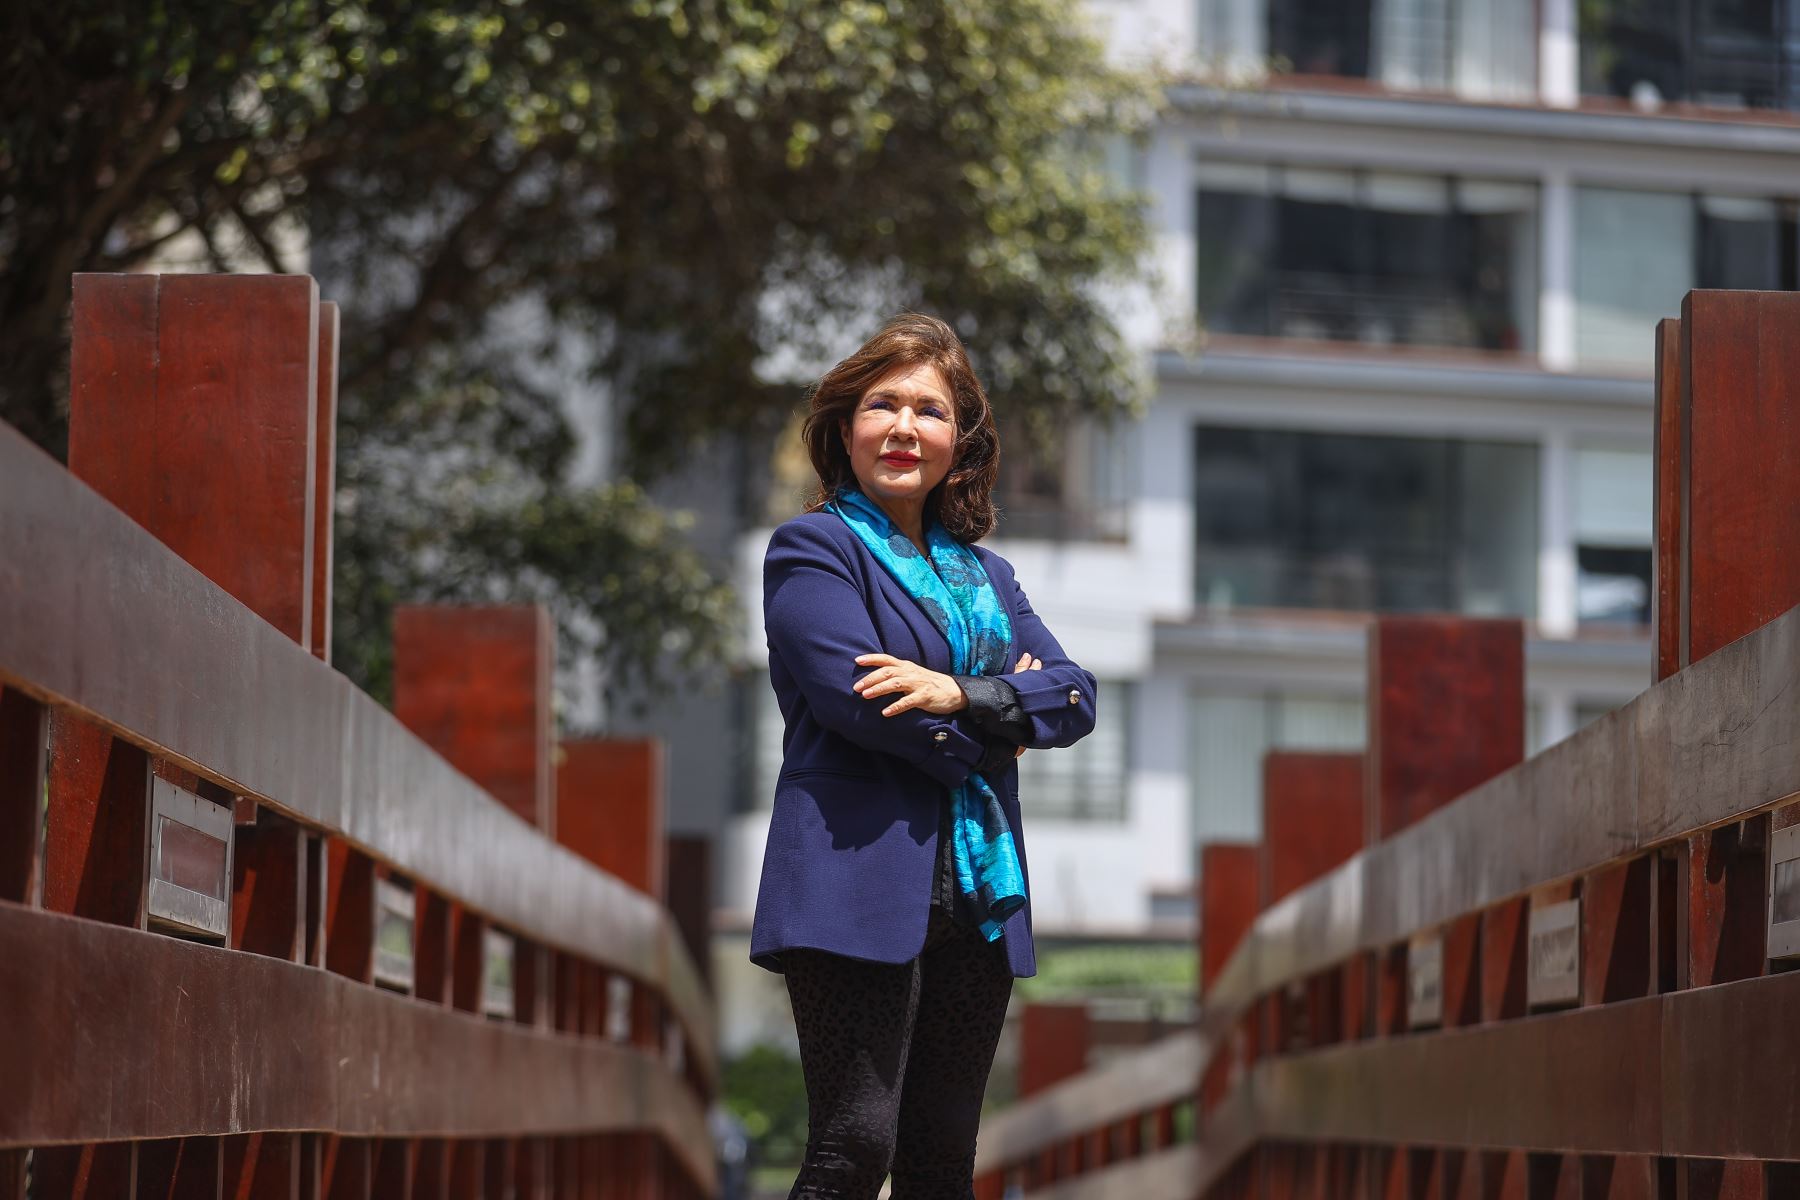 La Mg. Rossana Rivas Tarazona es una destacada científica peruana que acaba de ser reconocida por importantes instituciones internacionales,  la Sociedad Científica International IFMBE y la Fundación Every Breath Counts, por su labor en el campo de la Ingeniería Biomédica y su lucha contra la pandemia del covid-19.Foto: ANDINA/Andrés Valle